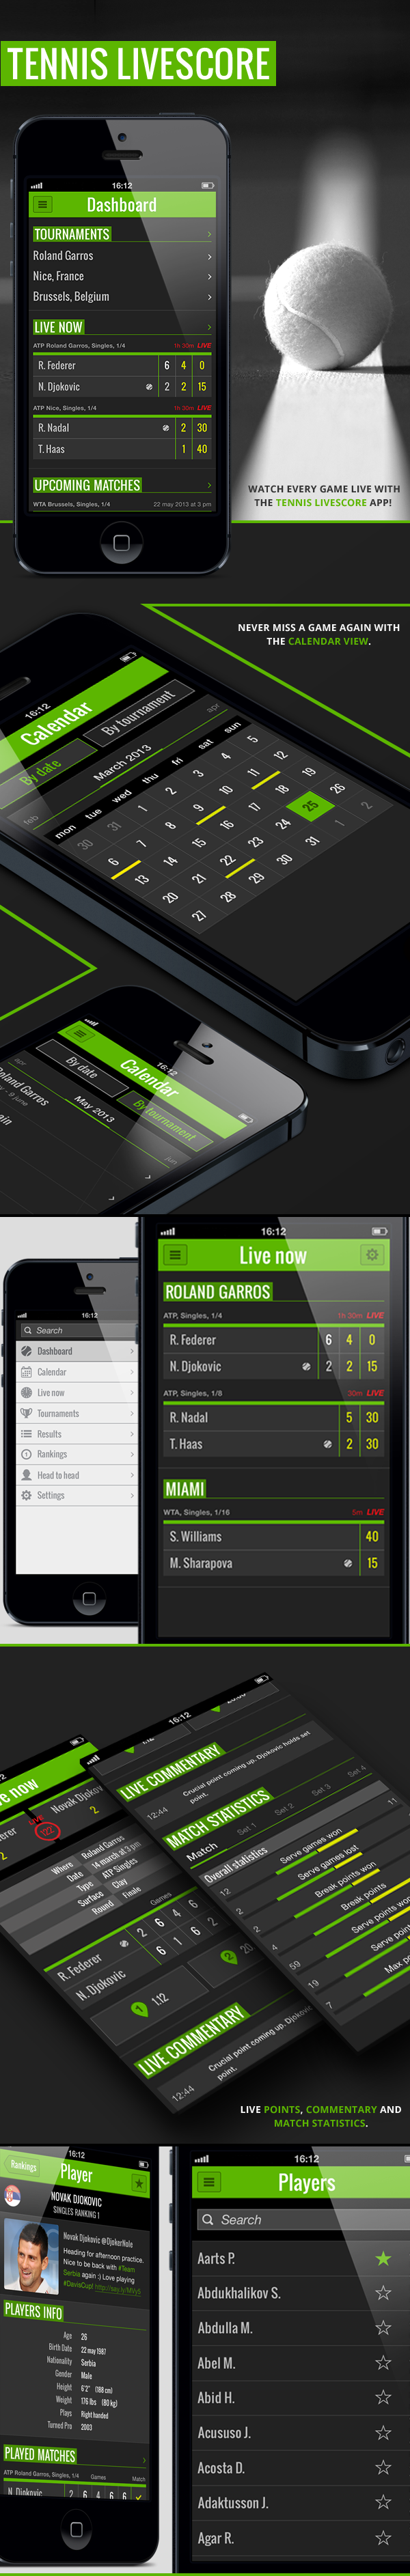 www livescore tennis